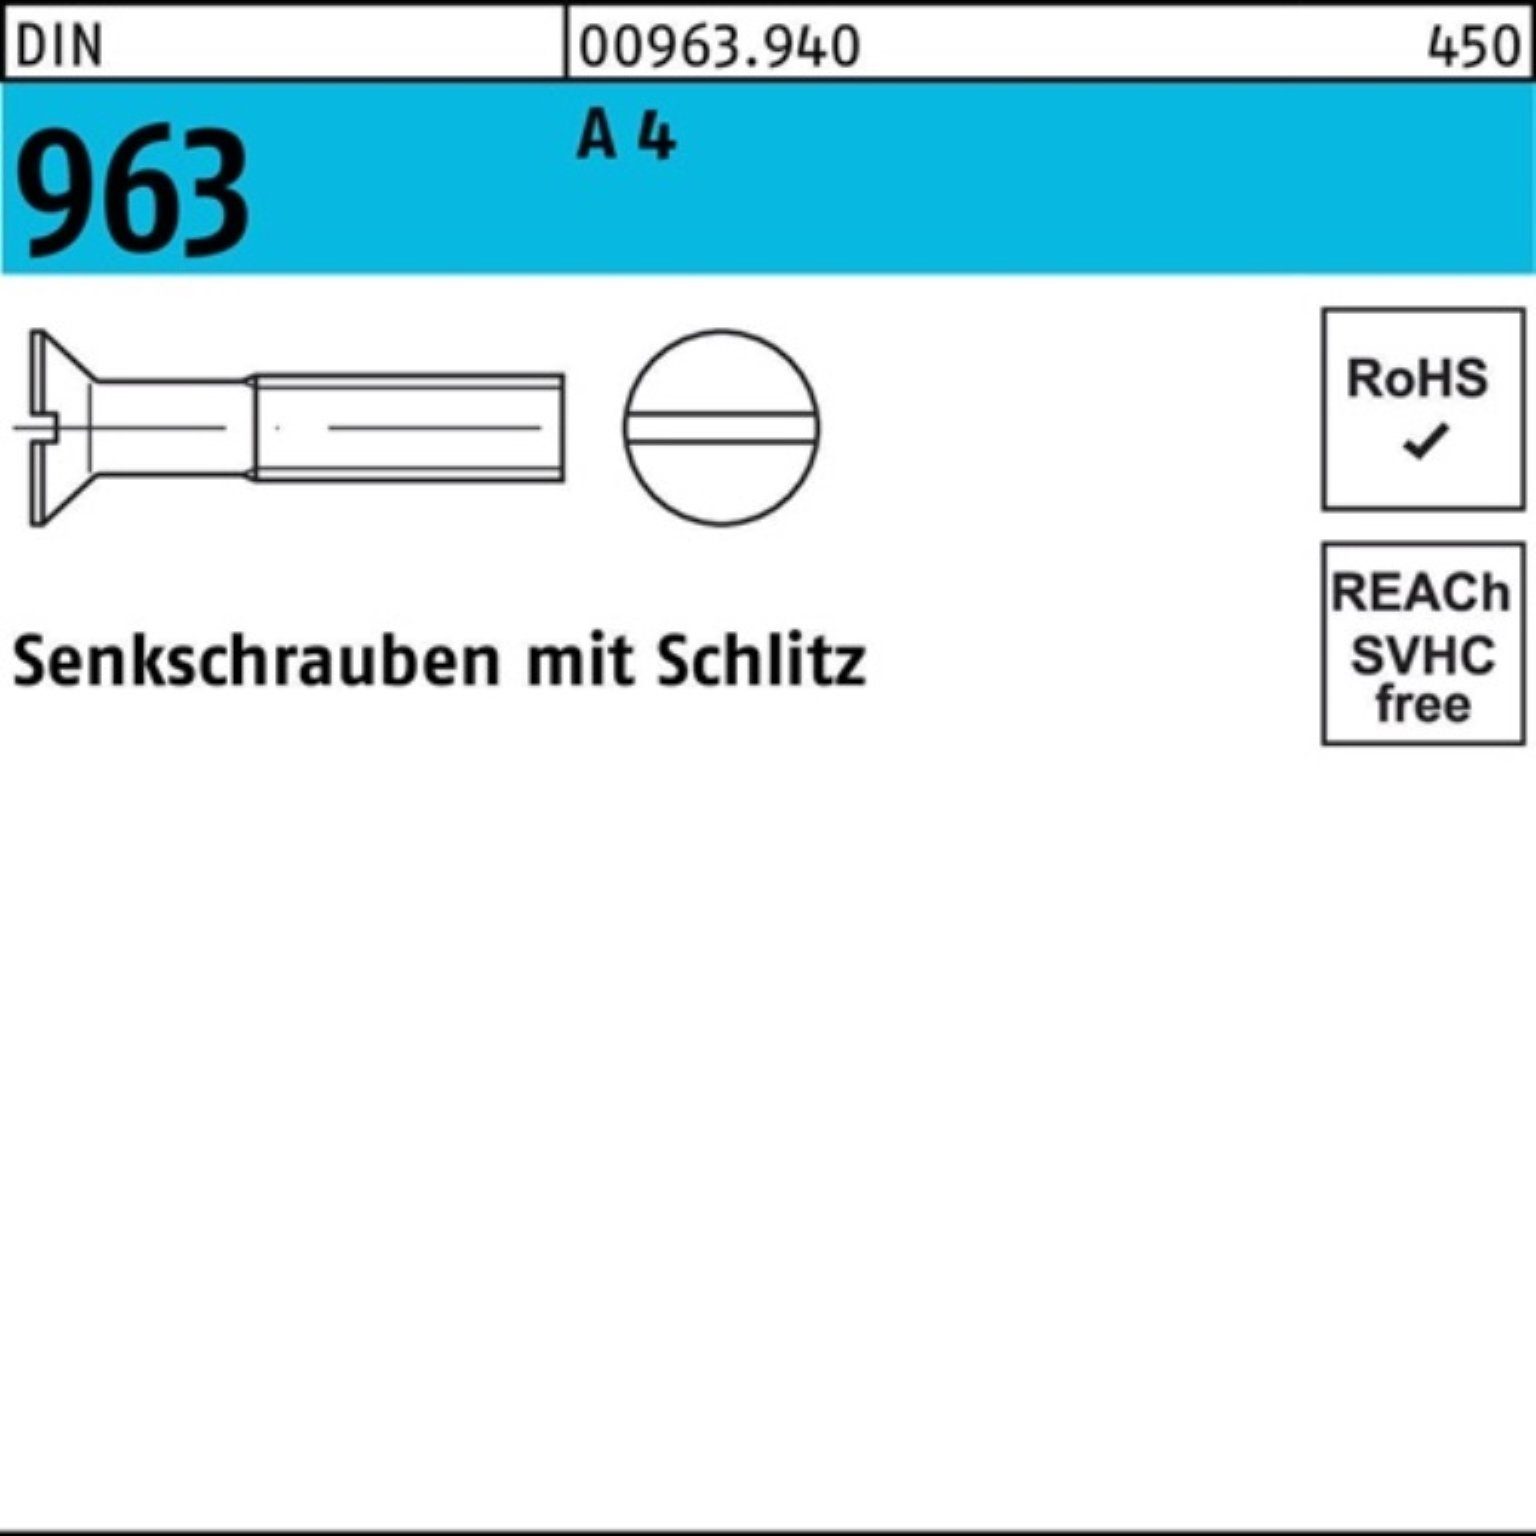 M3x Reyher 4 1000er Schlitz Stück 963 DIN 8 Senkschraube DIN A 963 Senkschraube Pack 1000